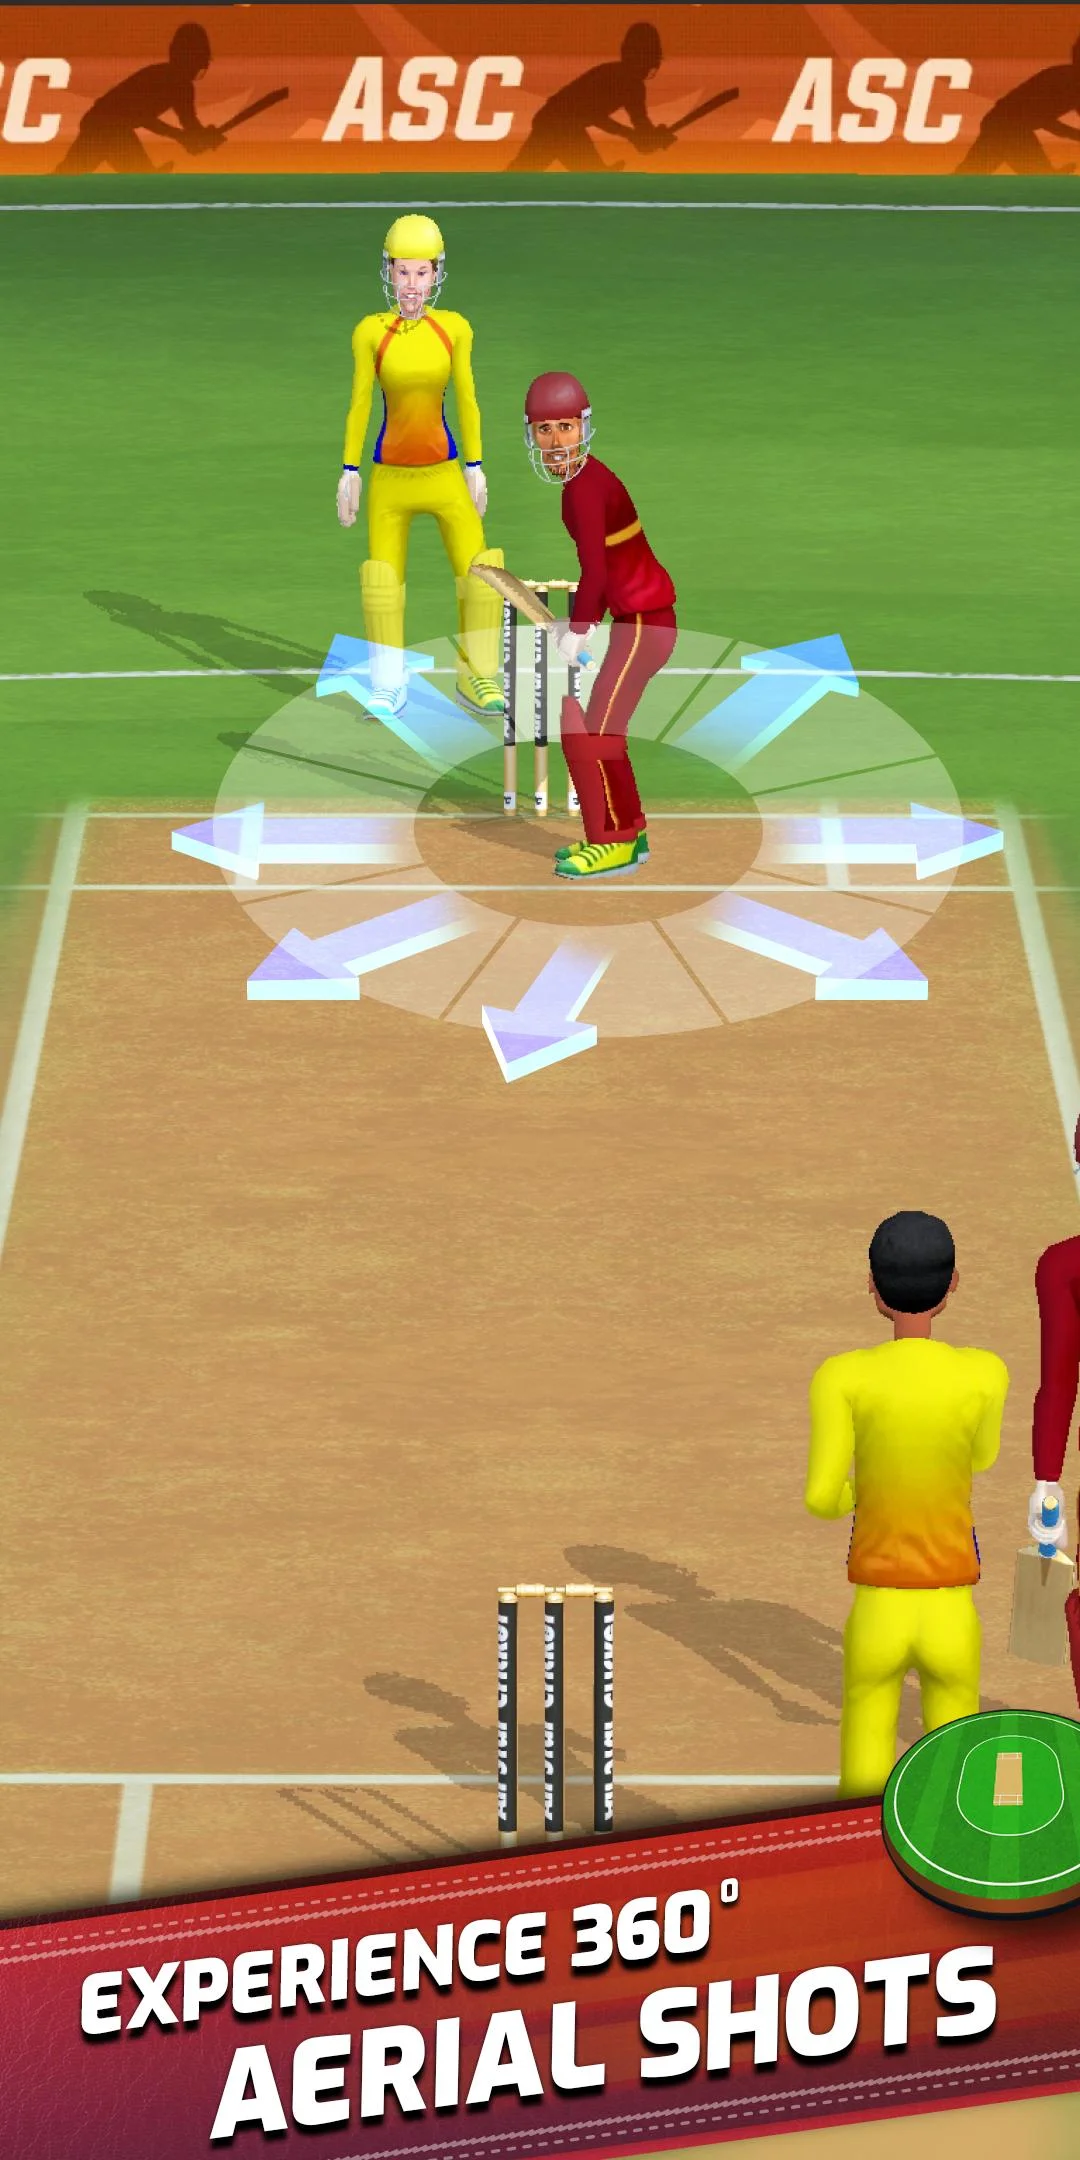 image winudf com screen 1 1 - All Star Cricket Mod Apk V1.0.4 (Unlimited Money)